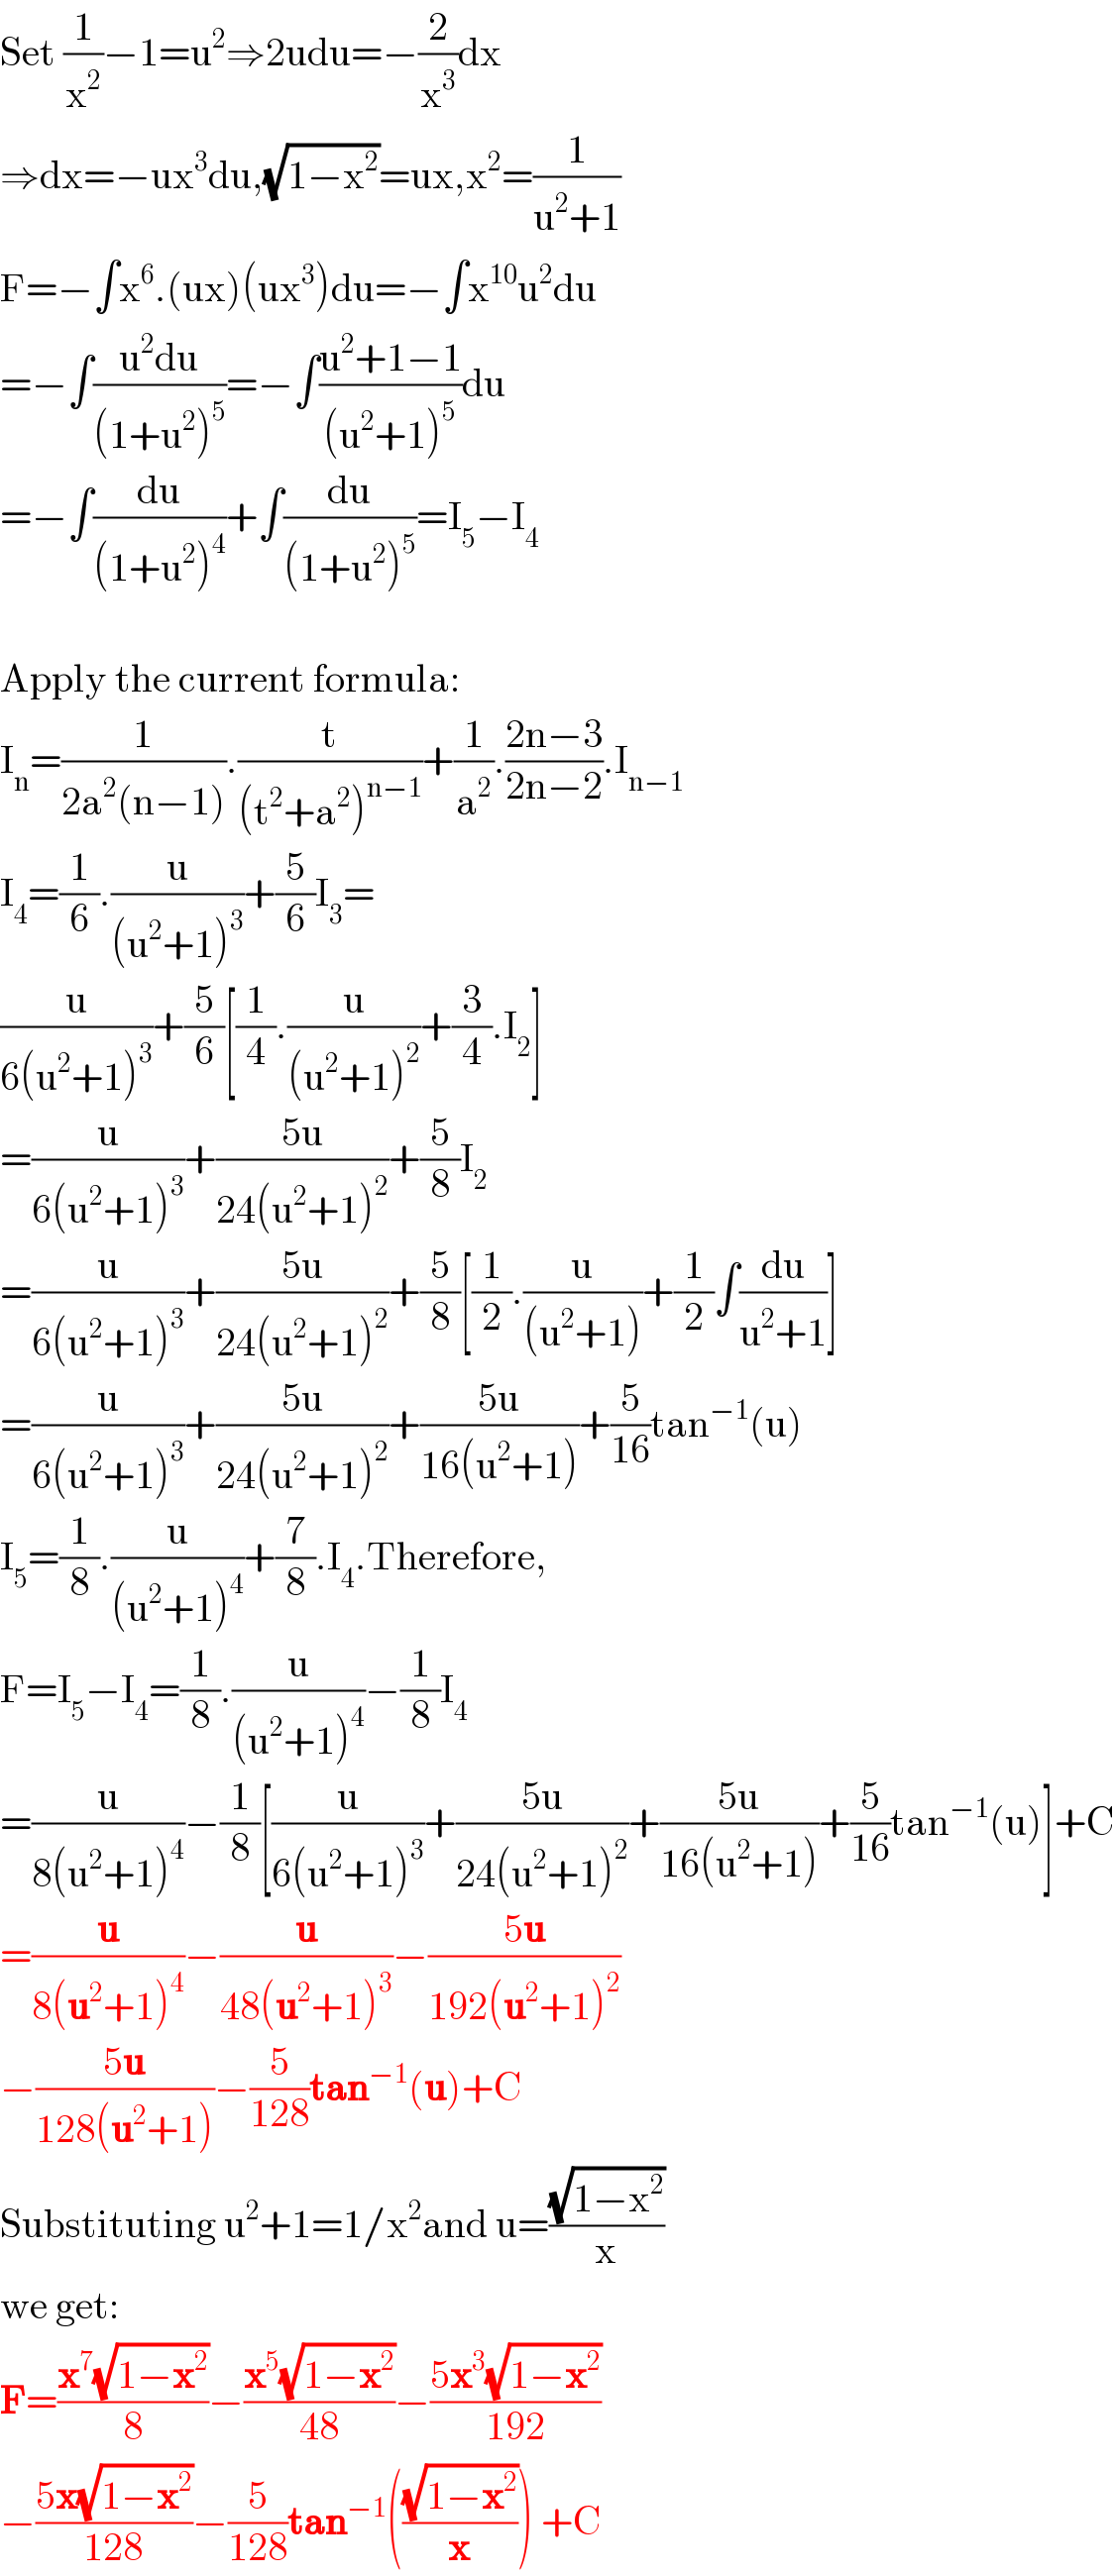 Set (1/x^2 )−1=u^2 ⇒2udu=−(2/x^3 )dx  ⇒dx=−ux^3 du,(√(1−x^2 ))=ux,x^2 =(1/(u^2 +1))  F=−∫x^6 .(ux)(ux^3 )du=−∫x^(10) u^2 du  =−∫((u^2 du)/((1+u^2 )^5 ))=−∫((u^2 +1−1)/((u^2 +1)^5 ))du  =−∫(du/((1+u^2 )^4 ))+∫(du/((1+u^2 )^5 ))=I_5 −I_4     Apply the current formula:  I_n =(1/(2a^2 (n−1))).(t/((t^2 +a^2 )^(n−1) ))+(1/a^2 ).((2n−3)/(2n−2)).I_(n−1)   I_4 =(1/6).(u/((u^2 +1)^3 ))+(5/6)I_3 =  (u/(6(u^2 +1)^3 ))+(5/6)[(1/4).(u/((u^2 +1)^2 ))+(3/4).I_2 ]  =(u/(6(u^2 +1)^3 ))+((5u)/(24(u^2 +1)^2 ))+(5/8)I_2   =(u/(6(u^2 +1)^3 ))+((5u)/(24(u^2 +1)^2 ))+(5/8)[(1/2).(u/((u^2 +1)))+(1/2)∫(du/(u^2 +1))]  =(u/(6(u^2 +1)^3 ))+((5u)/(24(u^2 +1)^2 ))+((5u)/(16(u^2 +1)))+(5/(16))tan^(−1) (u)  I_5 =(1/8).(u/((u^2 +1)^4 ))+(7/8).I_4 .Therefore,  F=I_5 −I_4 =(1/8).(u/((u^2 +1)^4 ))−(1/8)I_4   =(u/(8(u^2 +1)^4 ))−(1/8)[(u/(6(u^2 +1)^3 ))+((5u)/(24(u^2 +1)^2 ))+((5u)/(16(u^2 +1)))+(5/(16))tan^(−1) (u)]+C  =(u/(8(u^2 +1)^4 ))−(u/(48(u^2 +1)^3 ))−((5u)/(192(u^2 +1)^2 ))   −((5u)/(128(u^2 +1)))−(5/(128))tan^(−1) (u)+C  Substituting u^2 +1=1/x^2 and u=((√(1−x^2 ))/x)  we get:  F=((x^7 (√(1−x^2 )))/8)−((x^5 (√(1−x^2 )))/(48))−((5x^3 (√(1−x^2 )))/(192))  −((5x(√(1−x^2 )))/(128))−(5/(128))tan^(−1) (((√(1−x^2 ))/x)) +C  